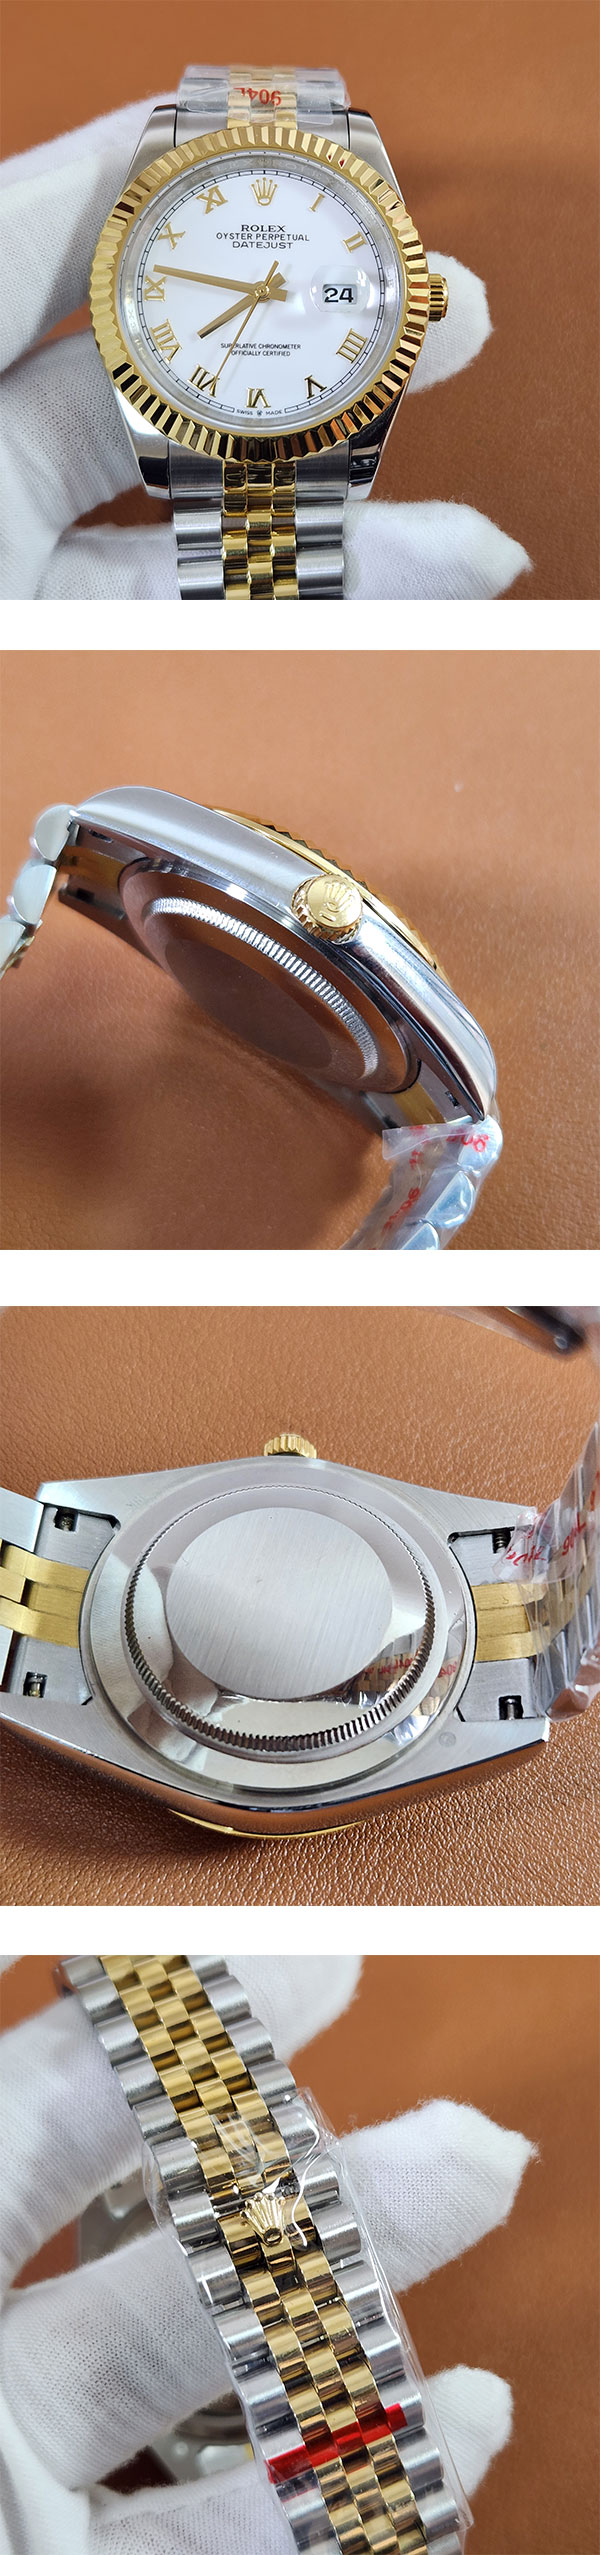 素敵なロレックスコピー腕時計 126333 デイトジャスト 41mm ホワイトローマ